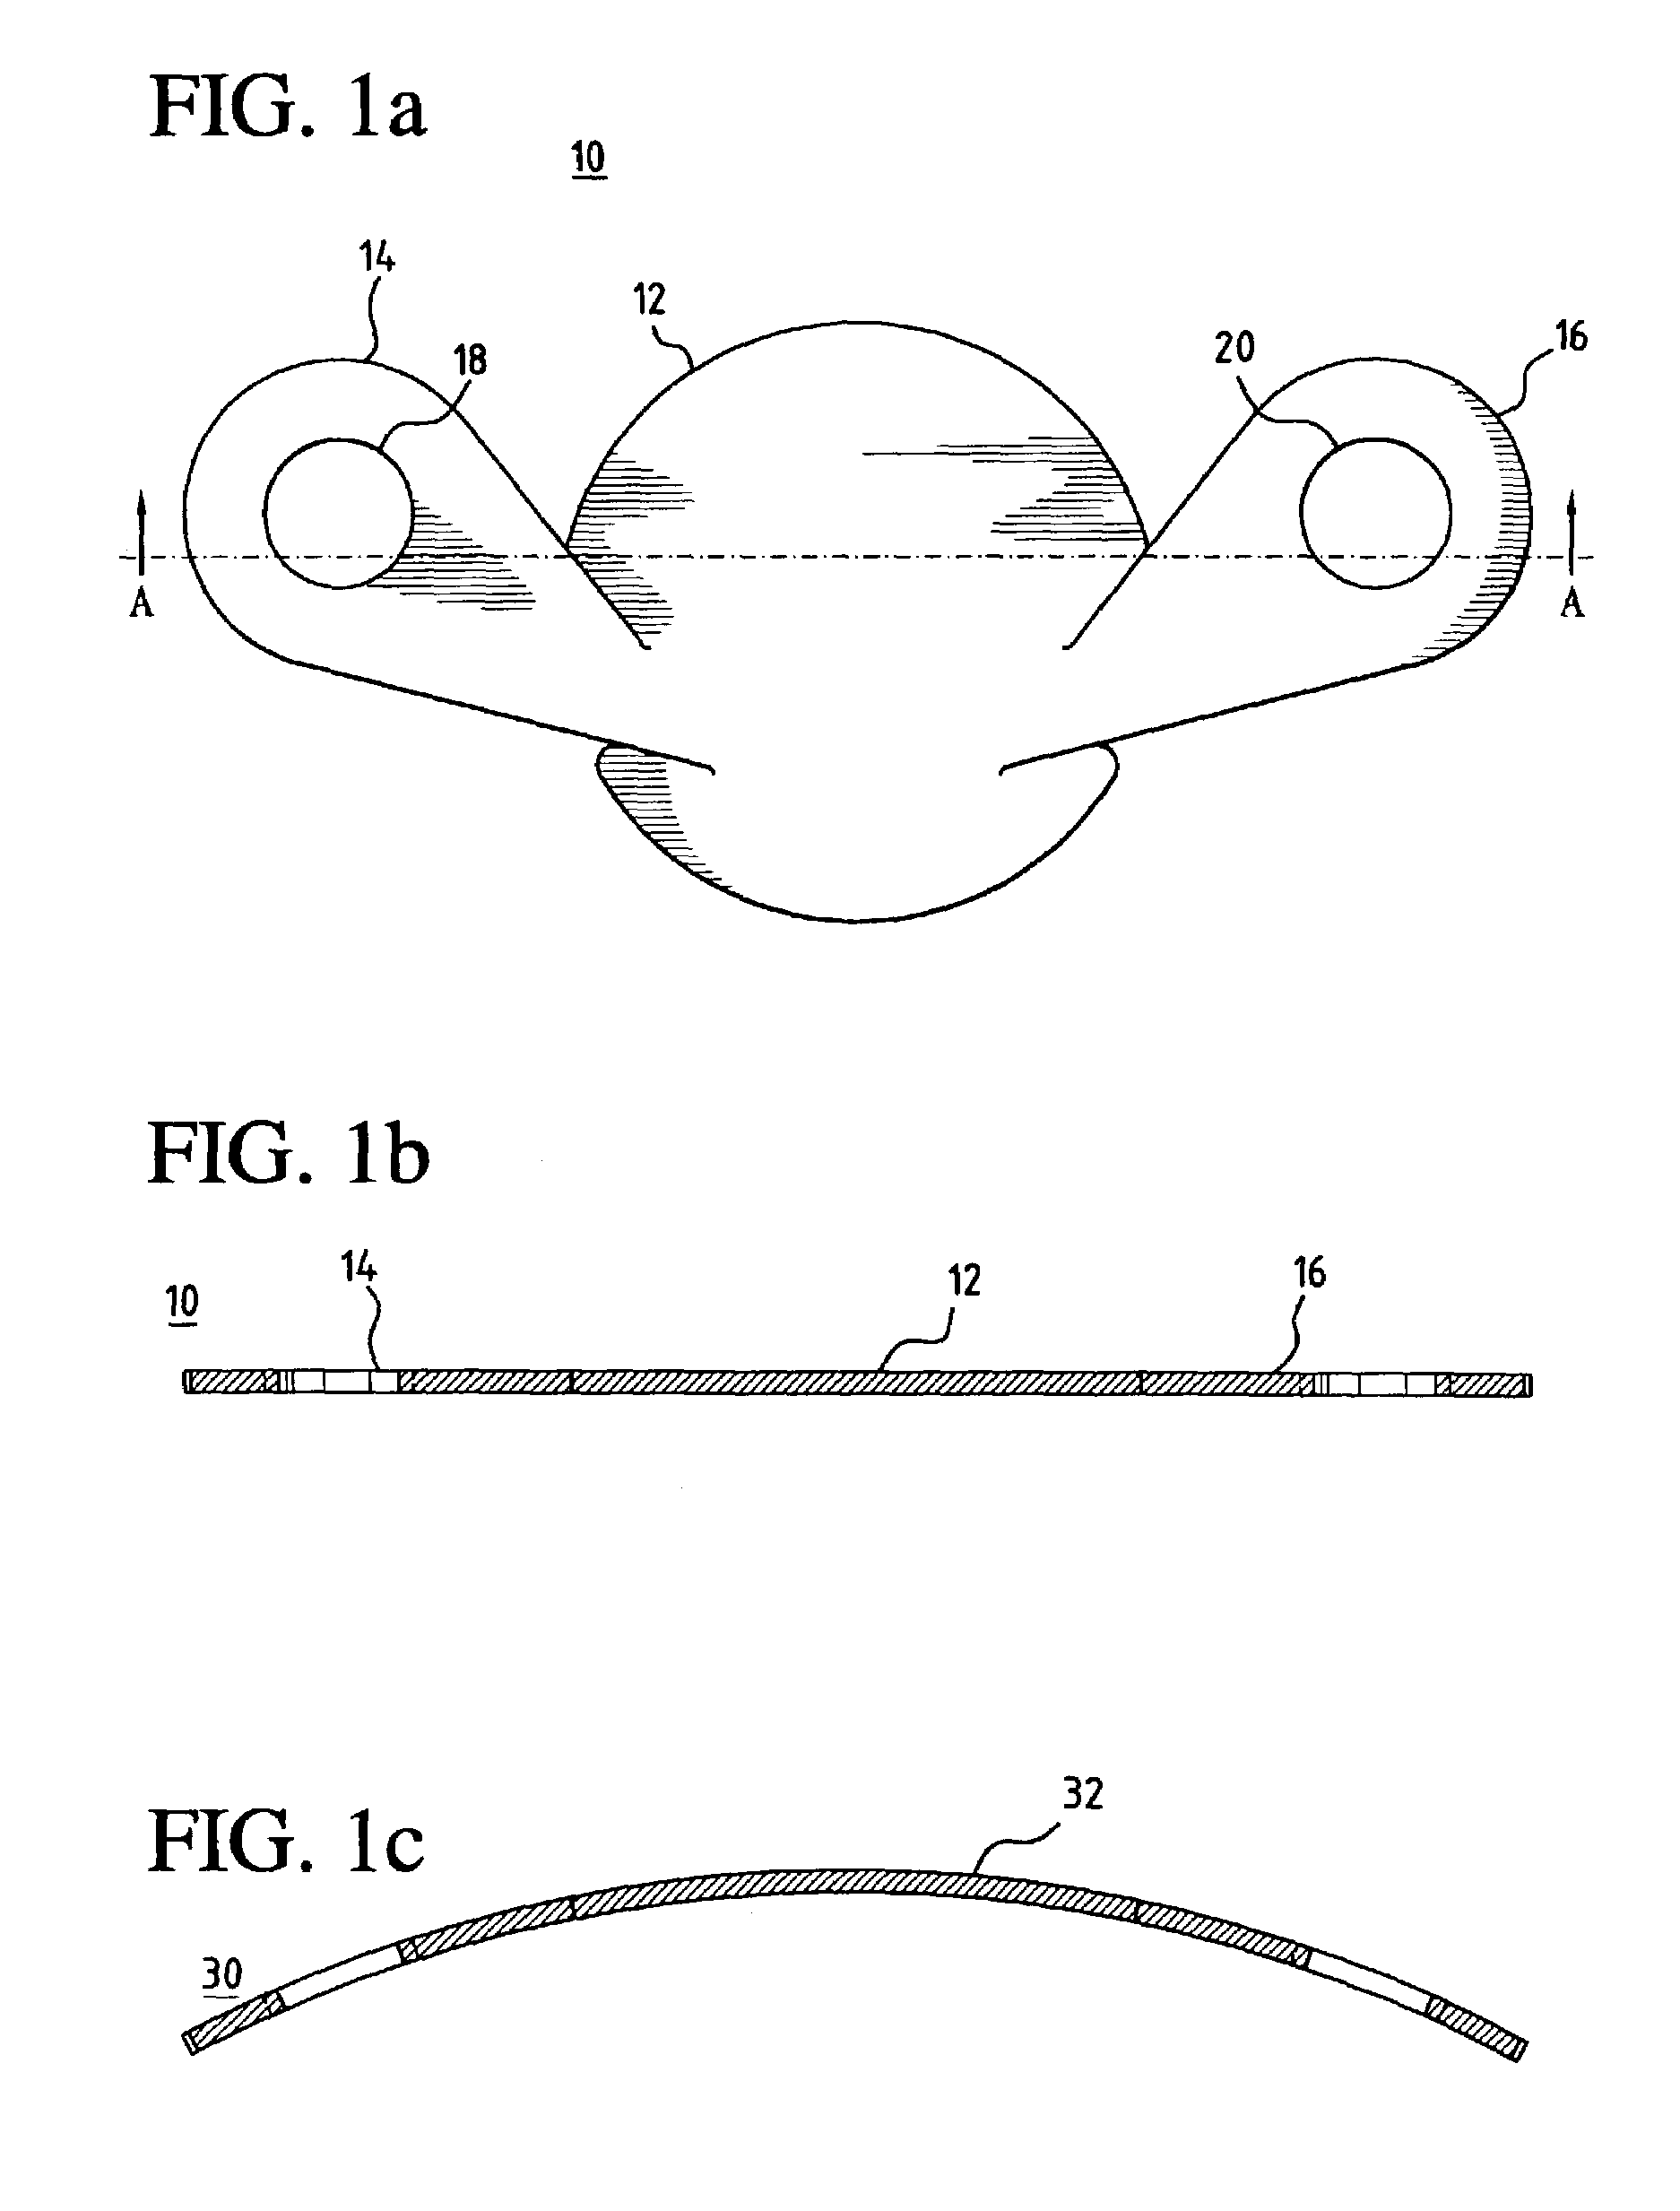 One-piece minicapsulorhexis valve